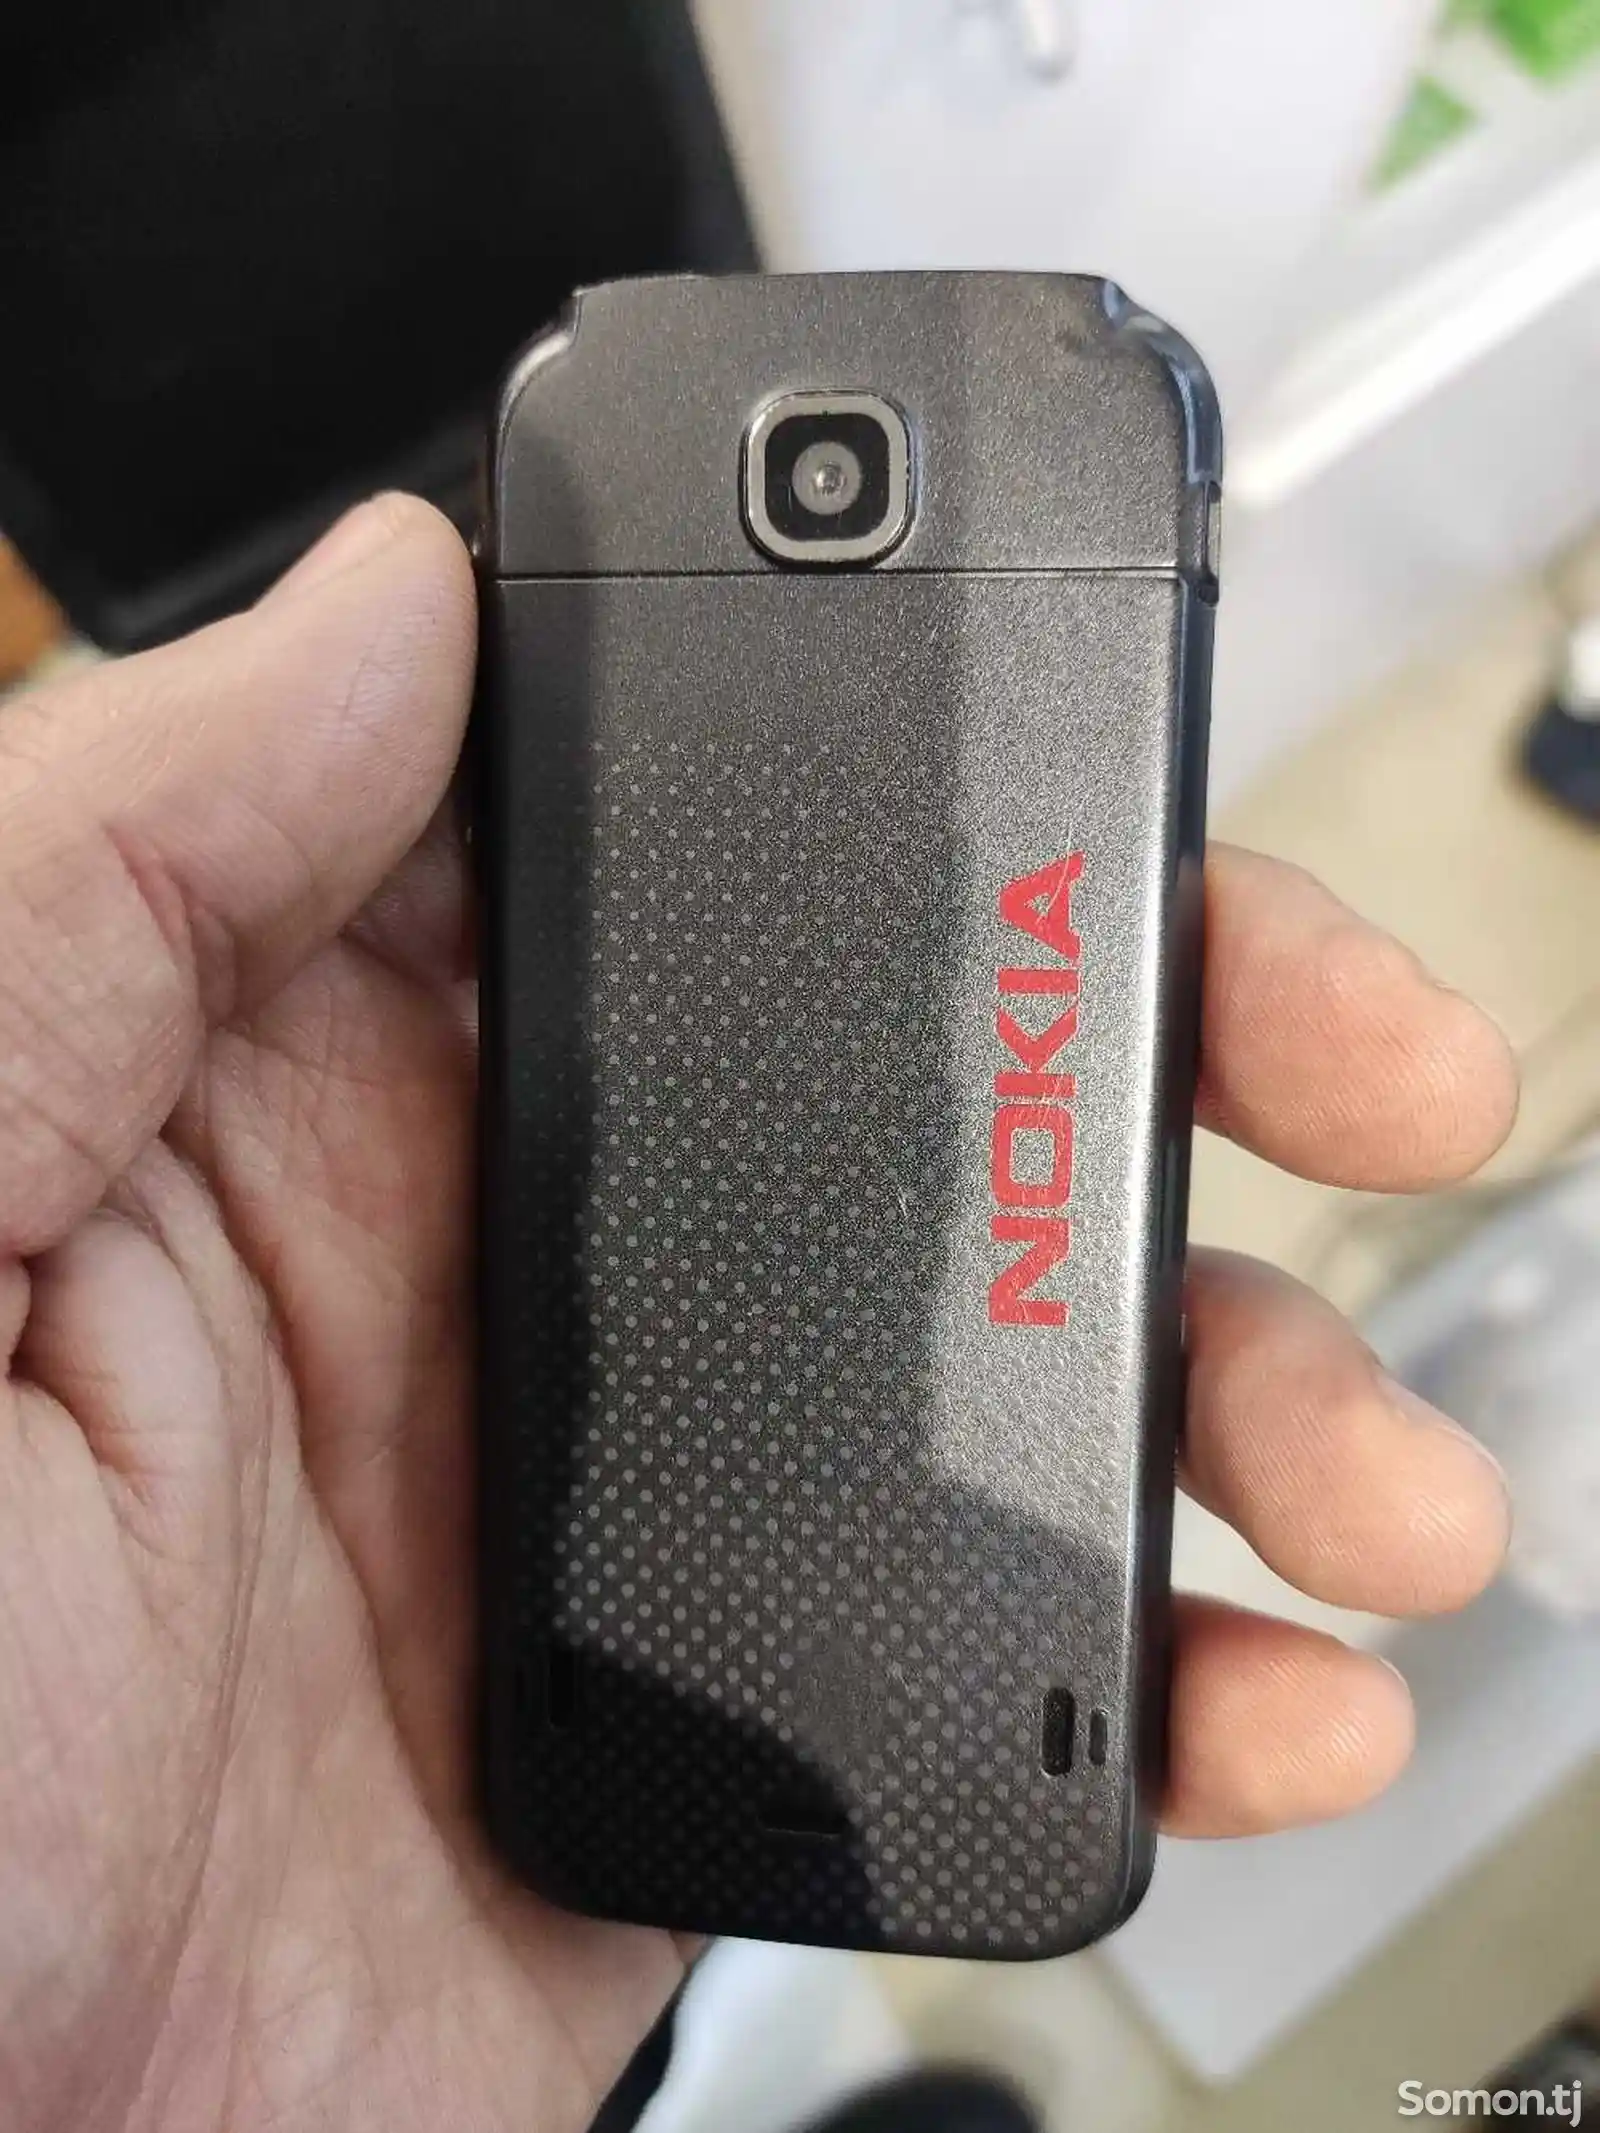 Nokia 5310-3